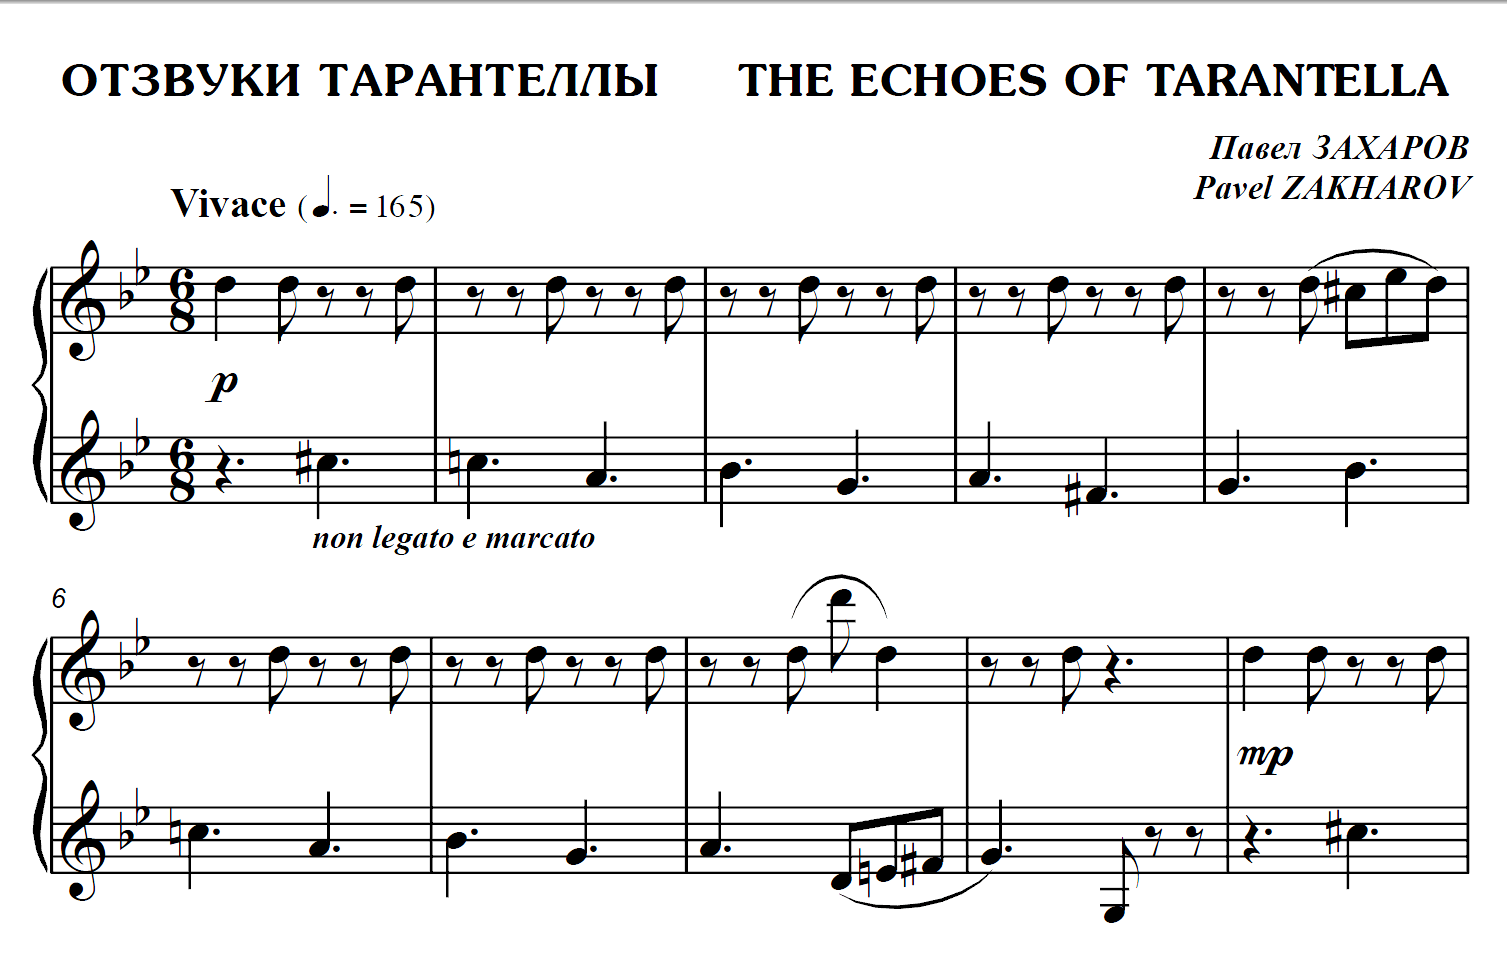 Piano-P.ZAKHAROV1507 x 965